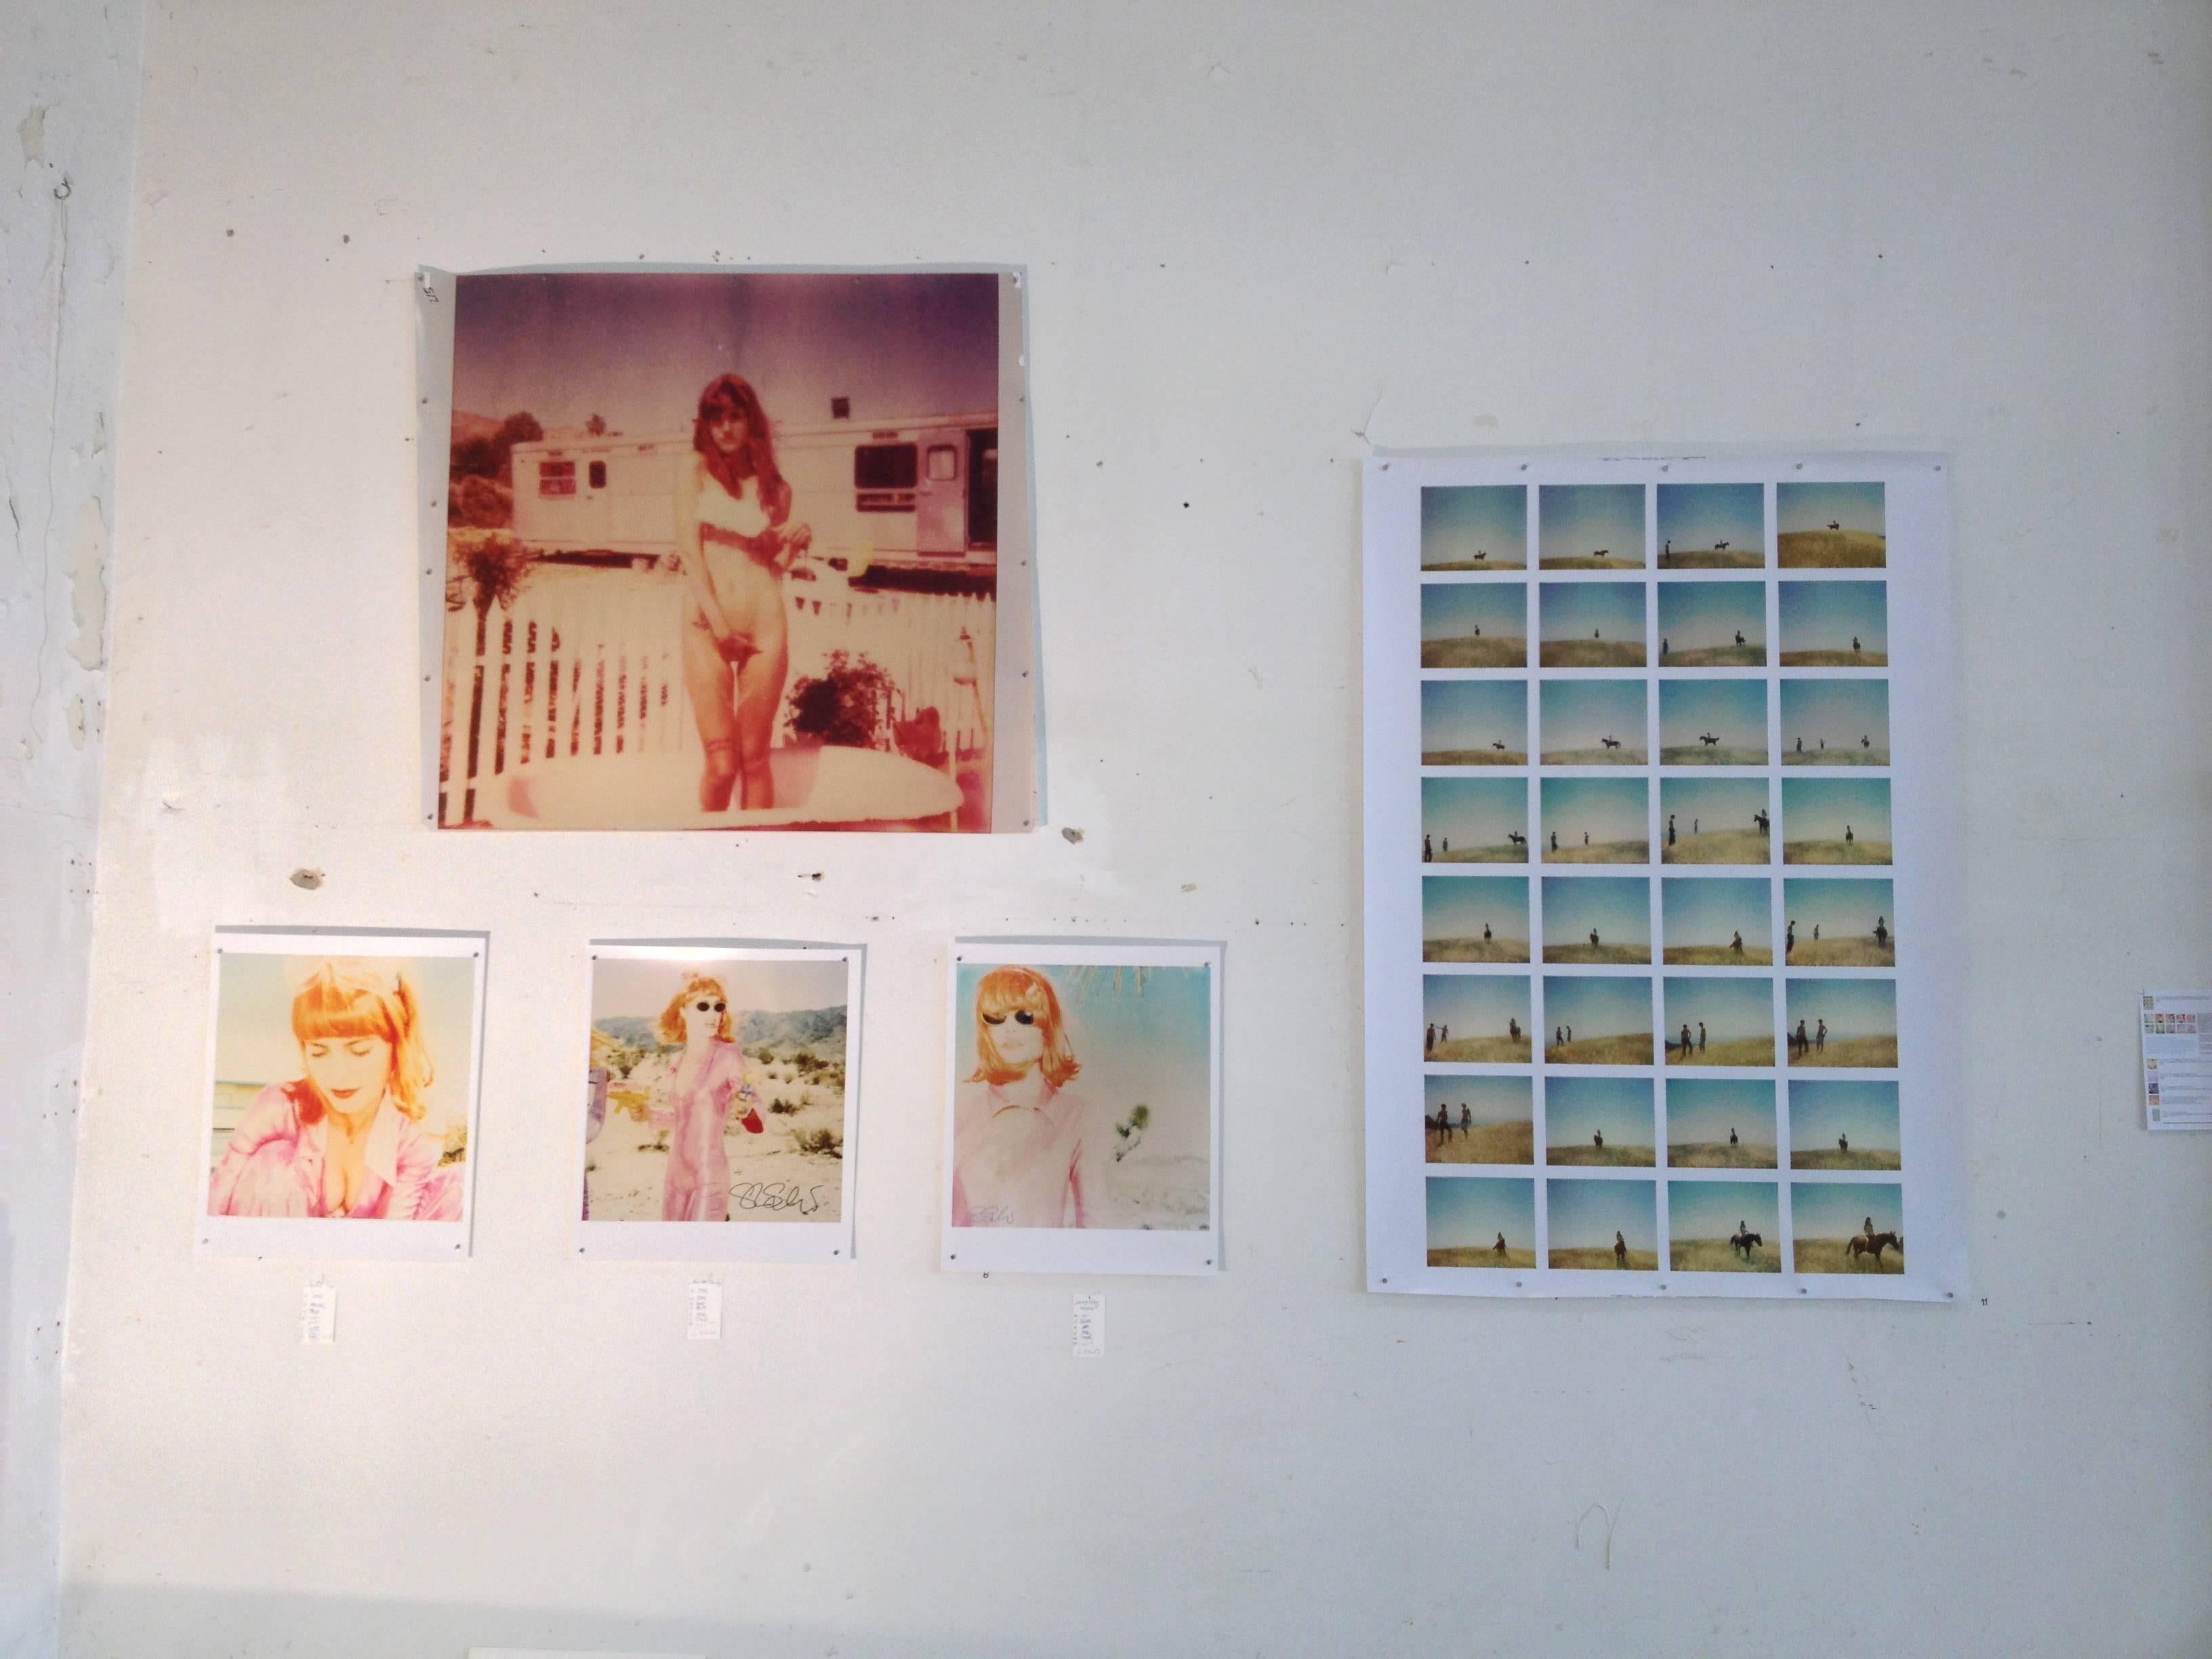 Renée's Dream - Contemporary, Portrait, Women, Polaroid, 21st Century, Color  1